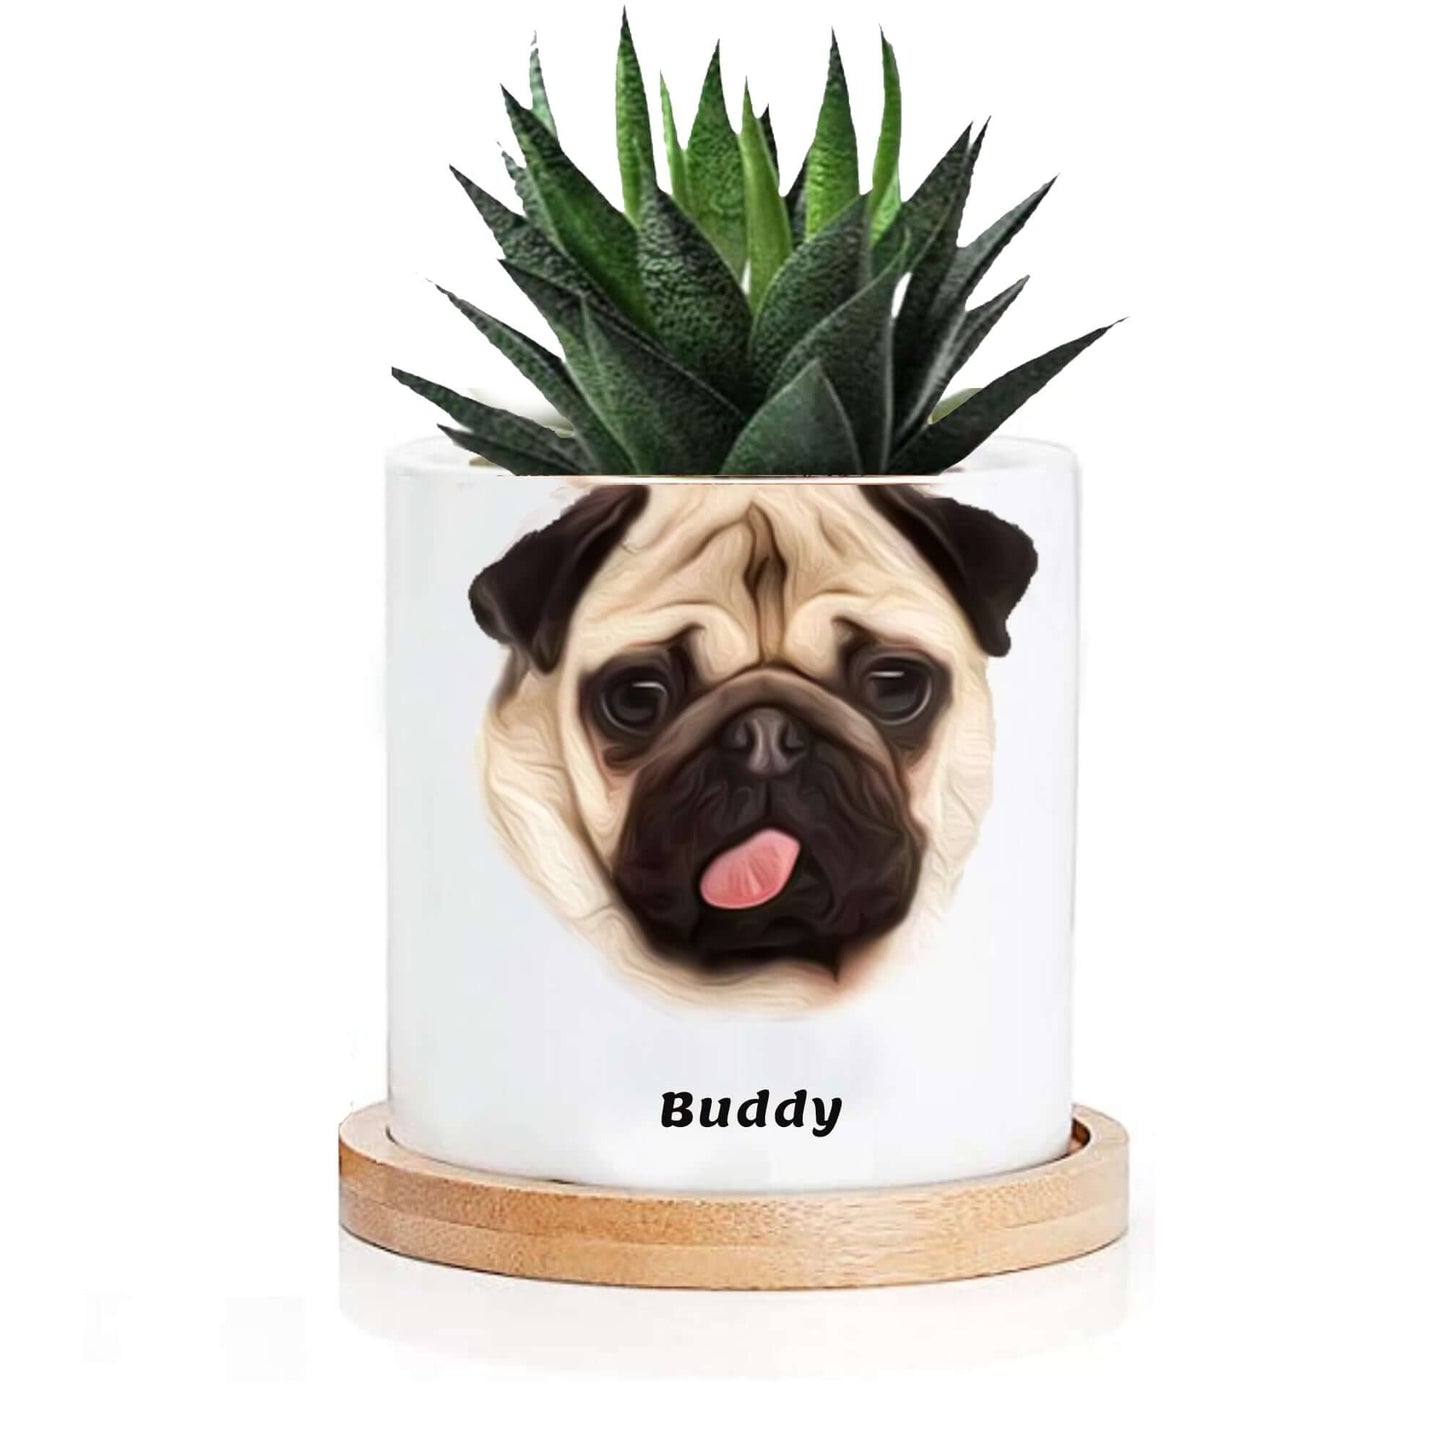 Personalized Cartoon Image Succulent Plant Pot